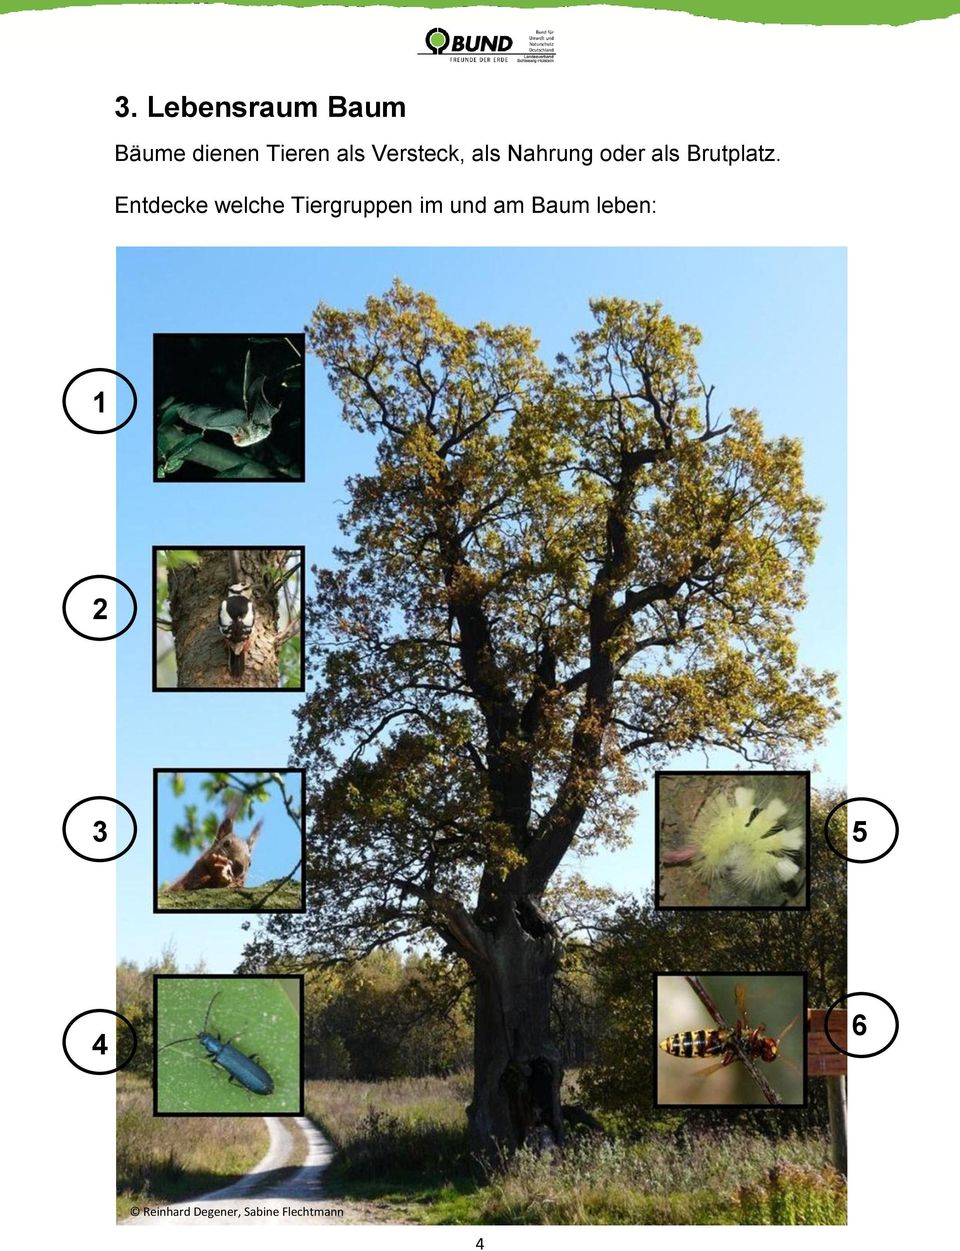 Entdecke welche Tiergruppen im und am Baum